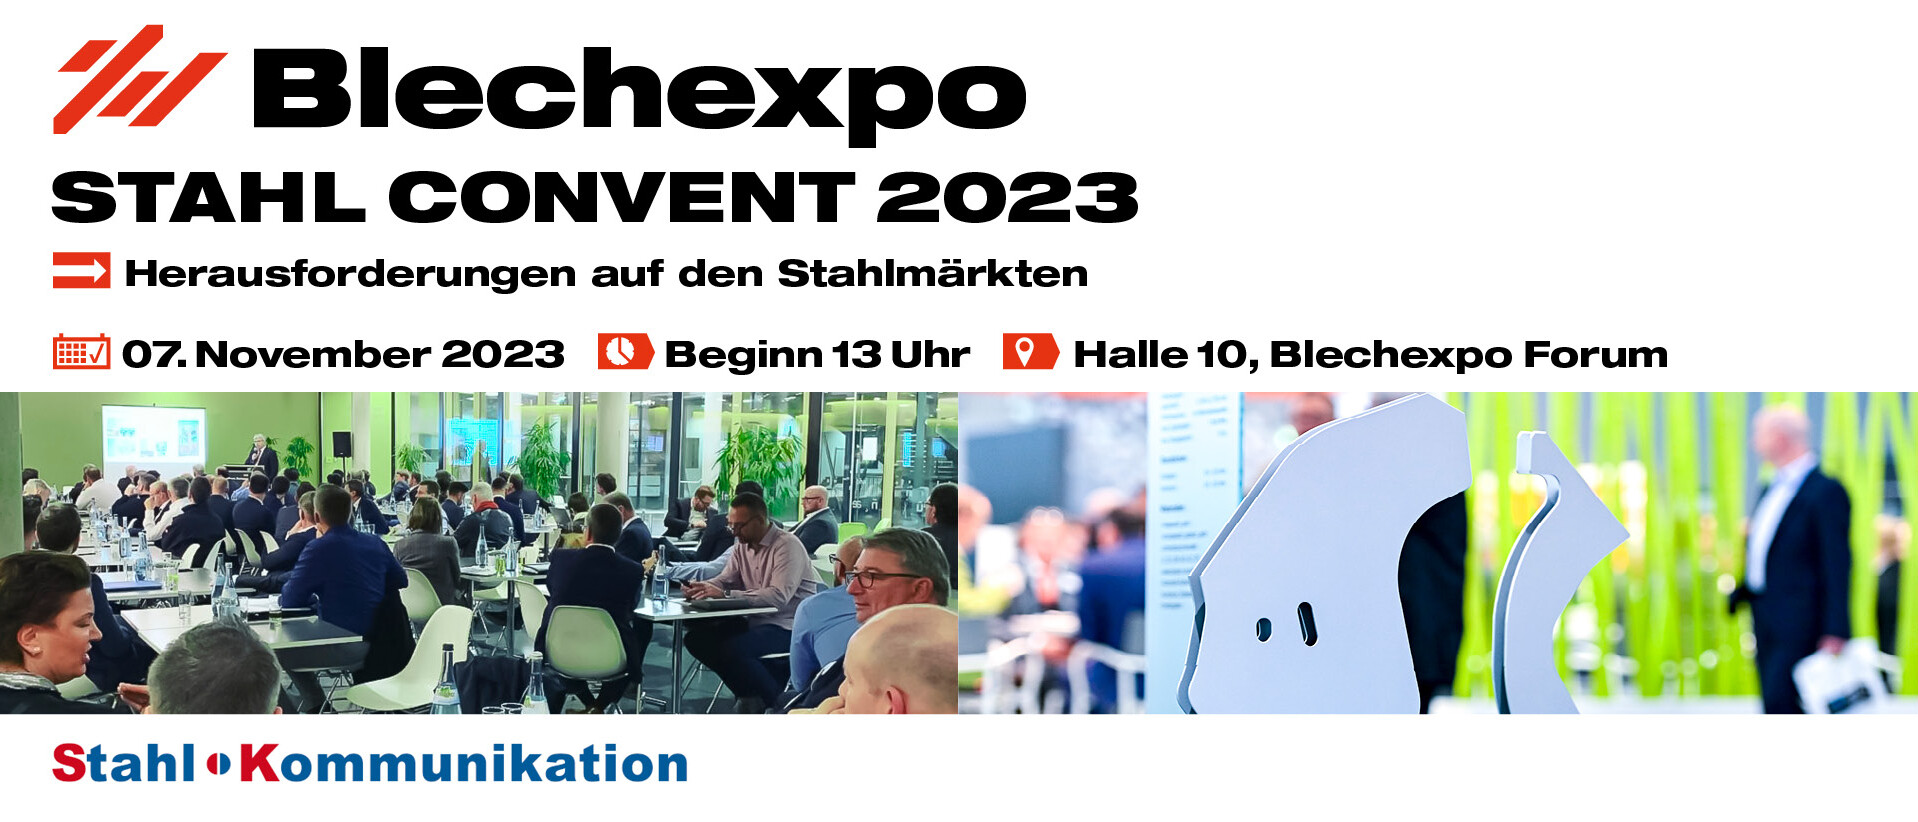 Blechexpo Internationale Fachmesse für Blechbearbeitung Blechexpo Stahlkonvent 2023 1920x822 website 01 de uai